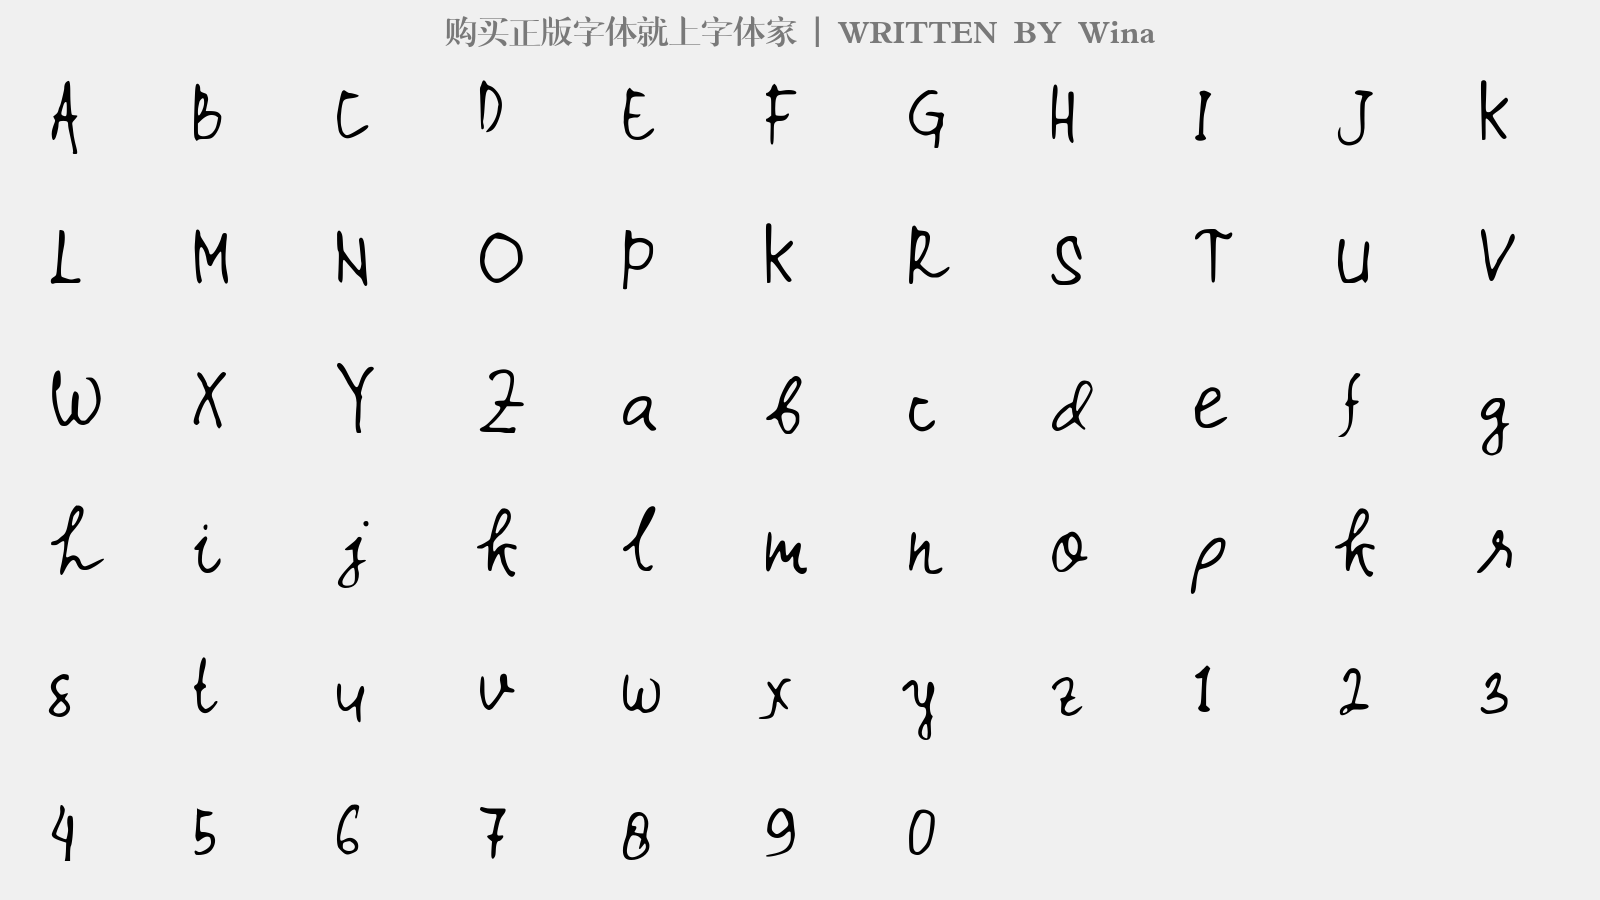 Wina - 大写字母/小写字母/数字